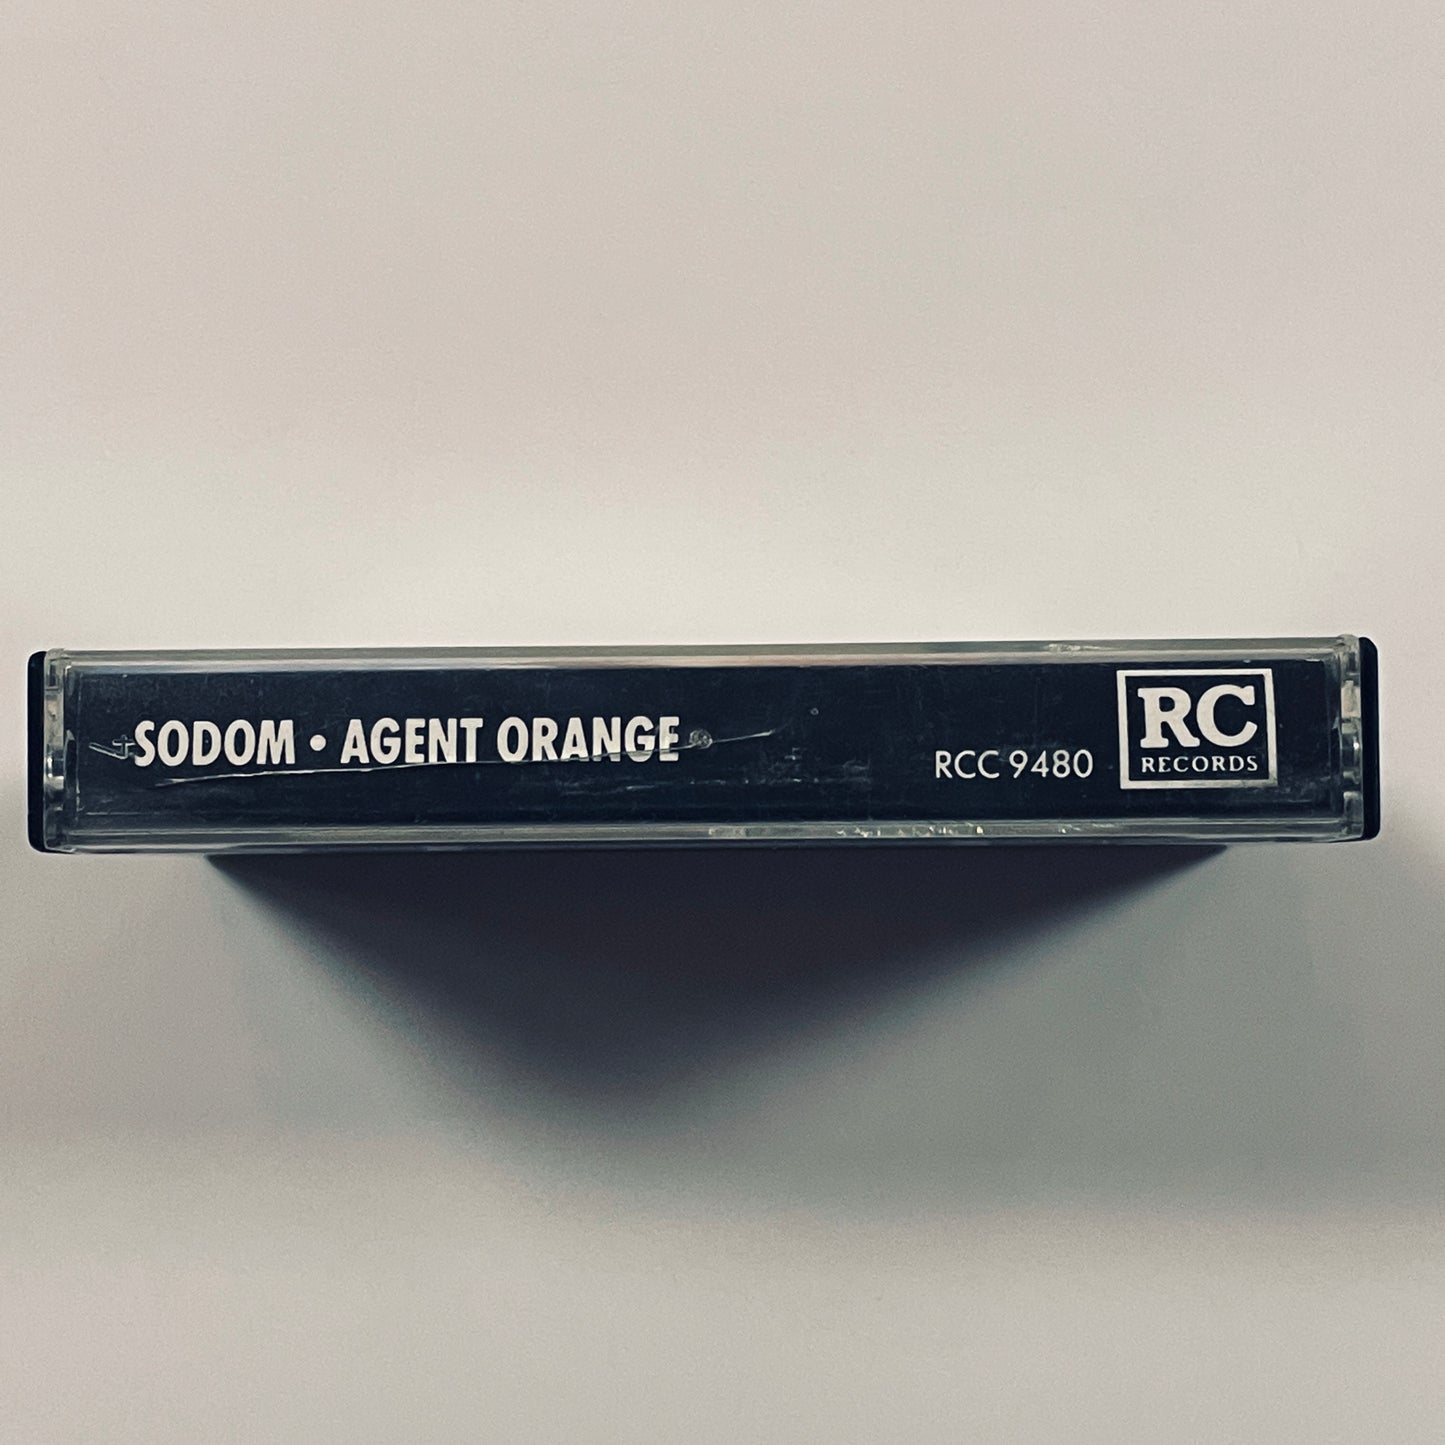 Sodom - Agent Orange original cassette tape (used)